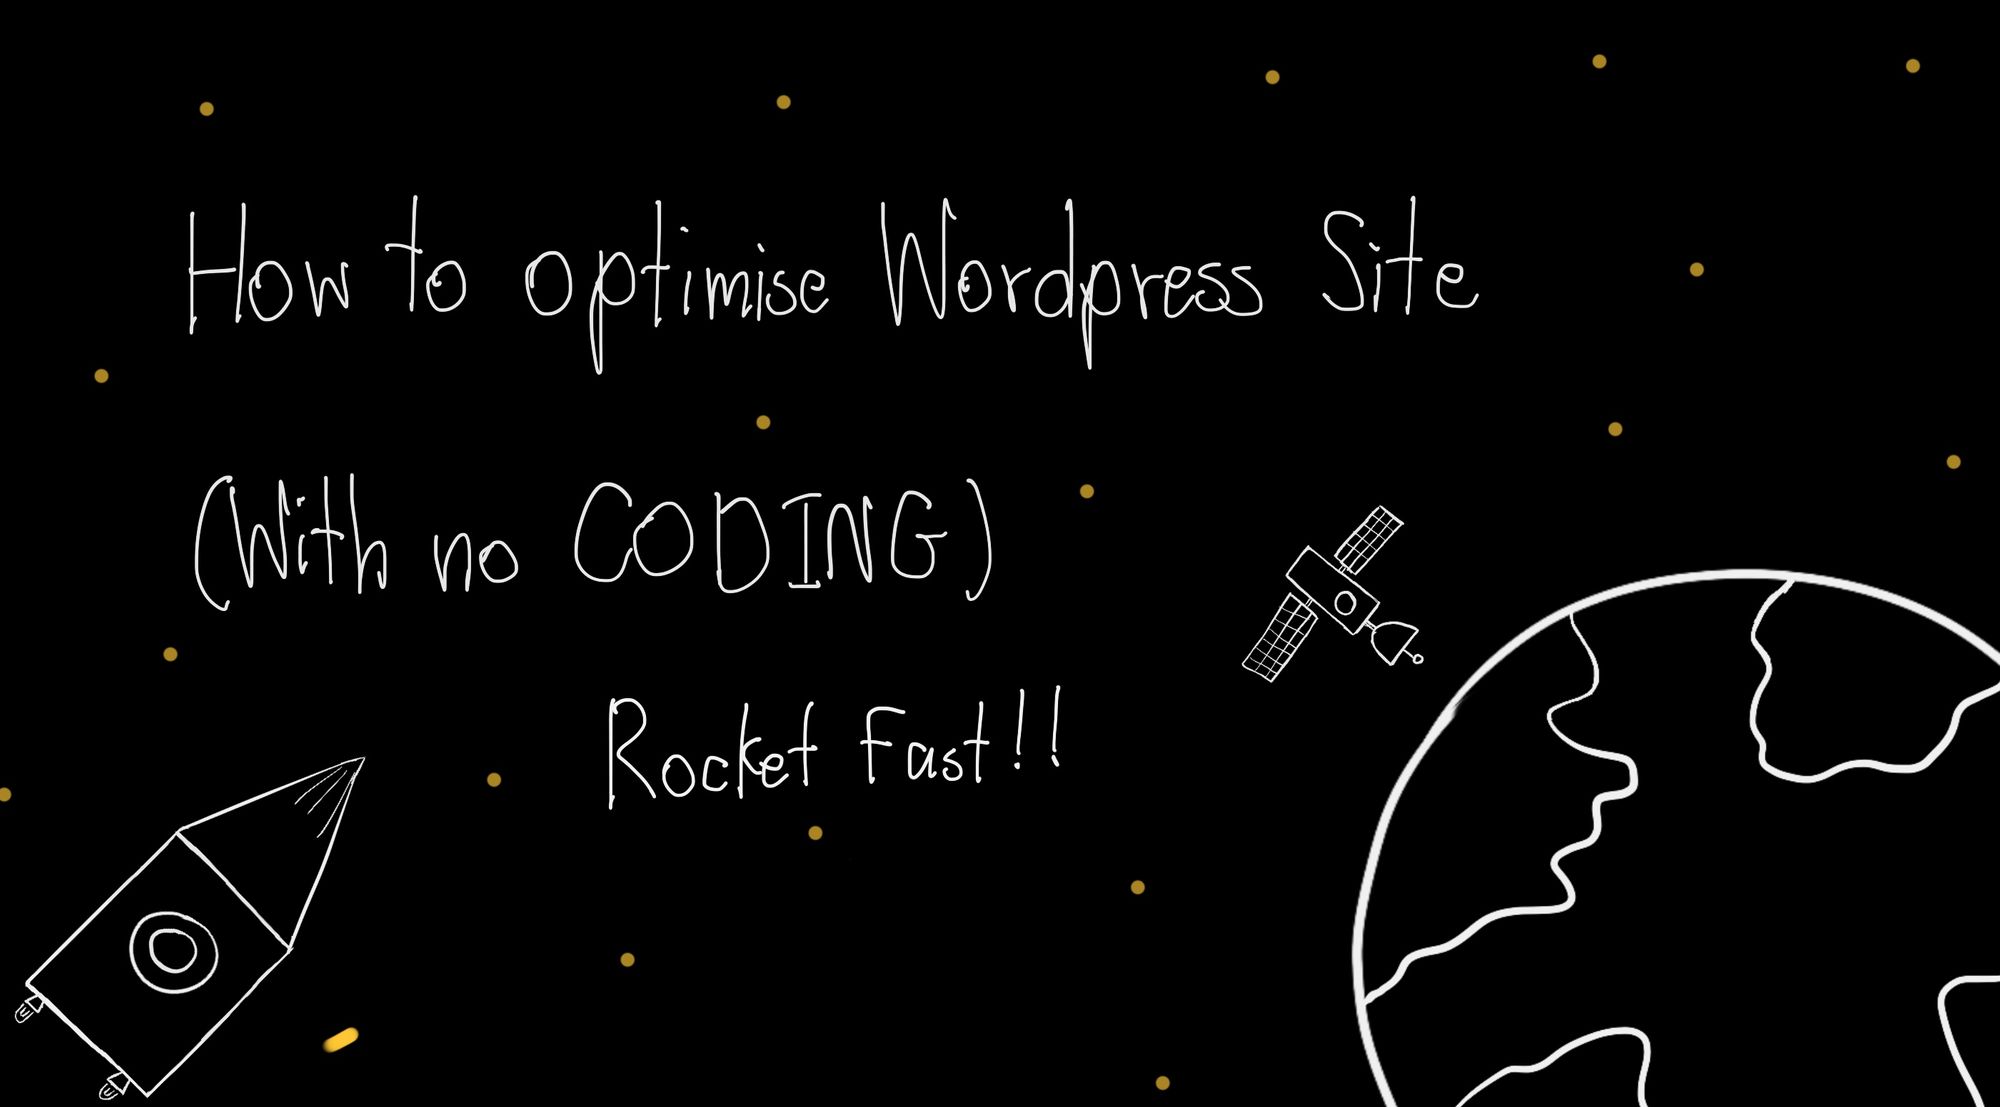 How to optimise Wordpress site